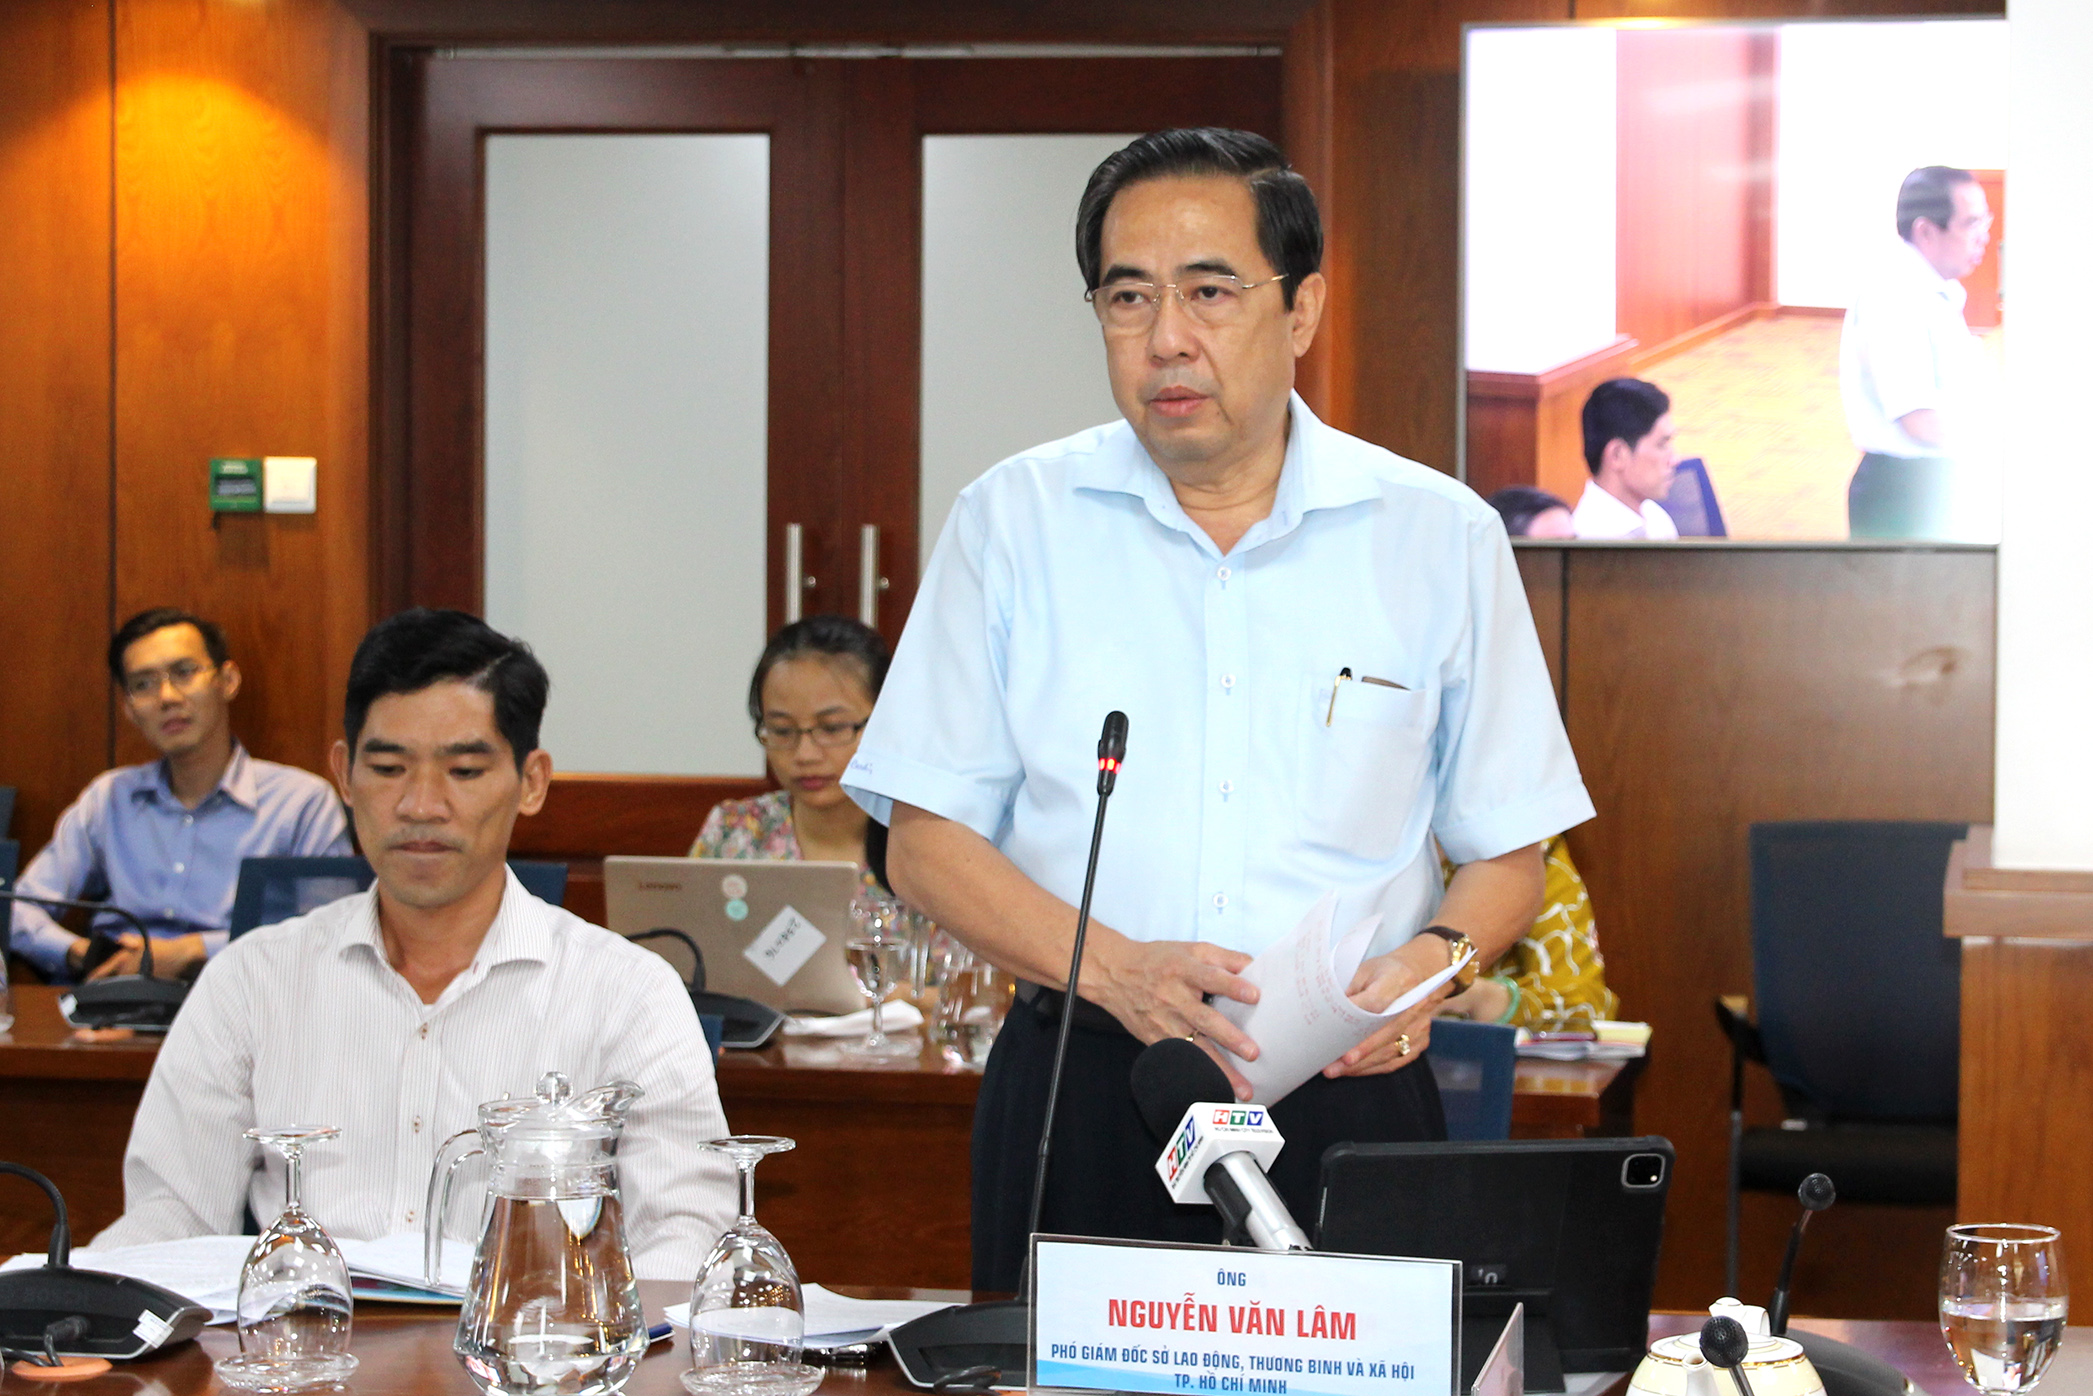 Đồng chí Nguyễn Văn Lâm - Phó Giám đốc Sở LĐTB&XH TP. Hồ Chí Minh phát biểu tại buổi họp báo (Ảnh: HH)